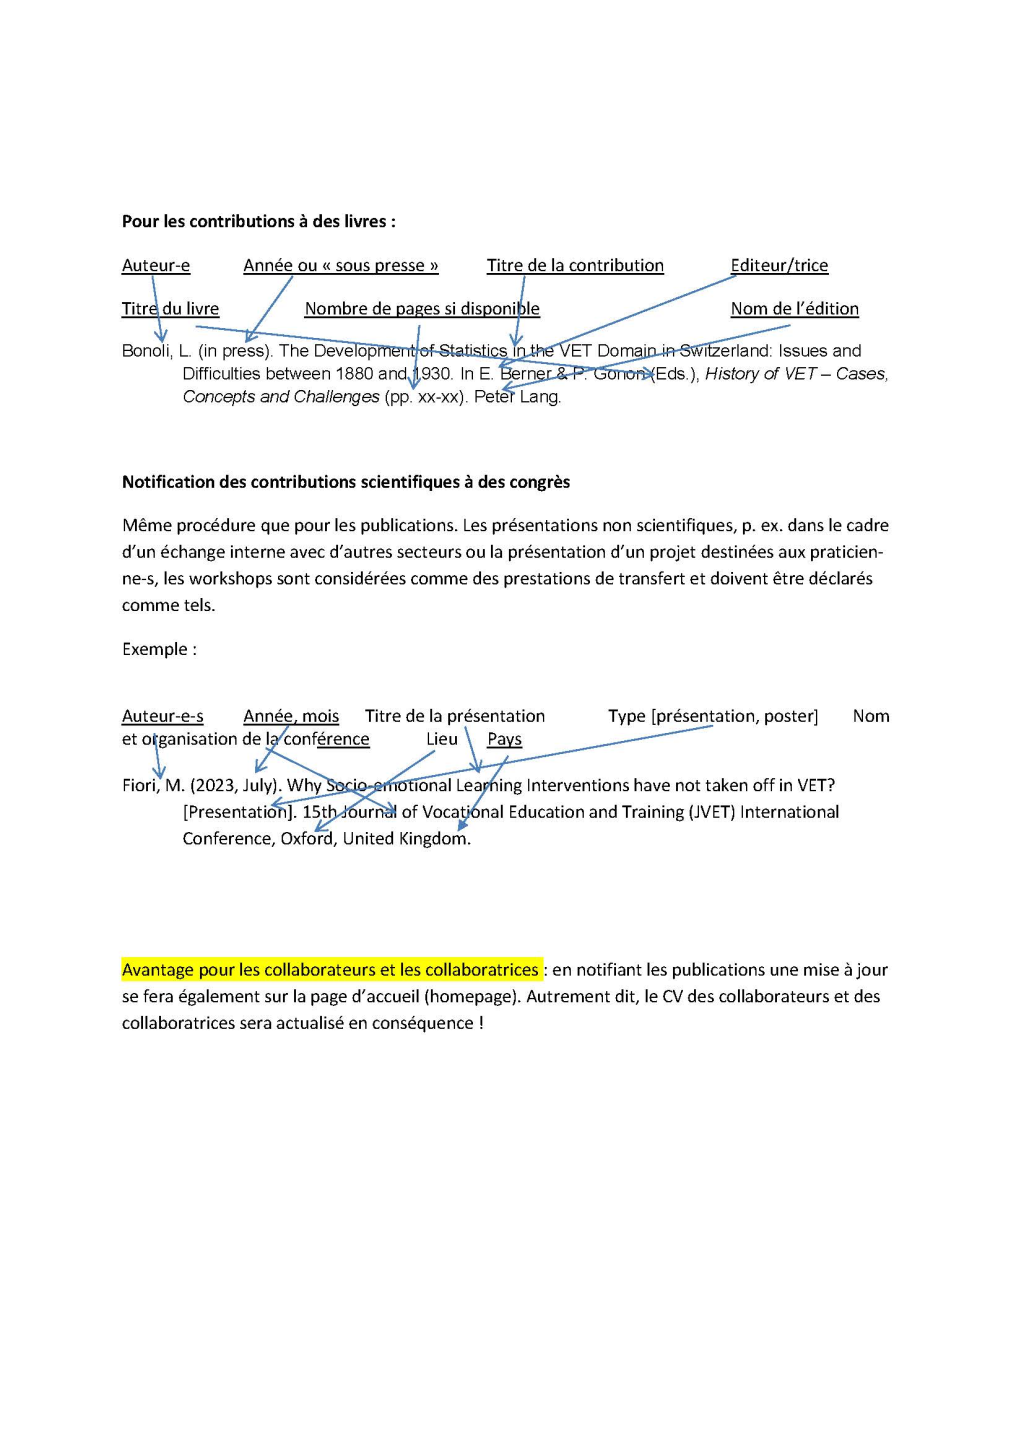 OA_Notifications des publications et congrès (page 2)